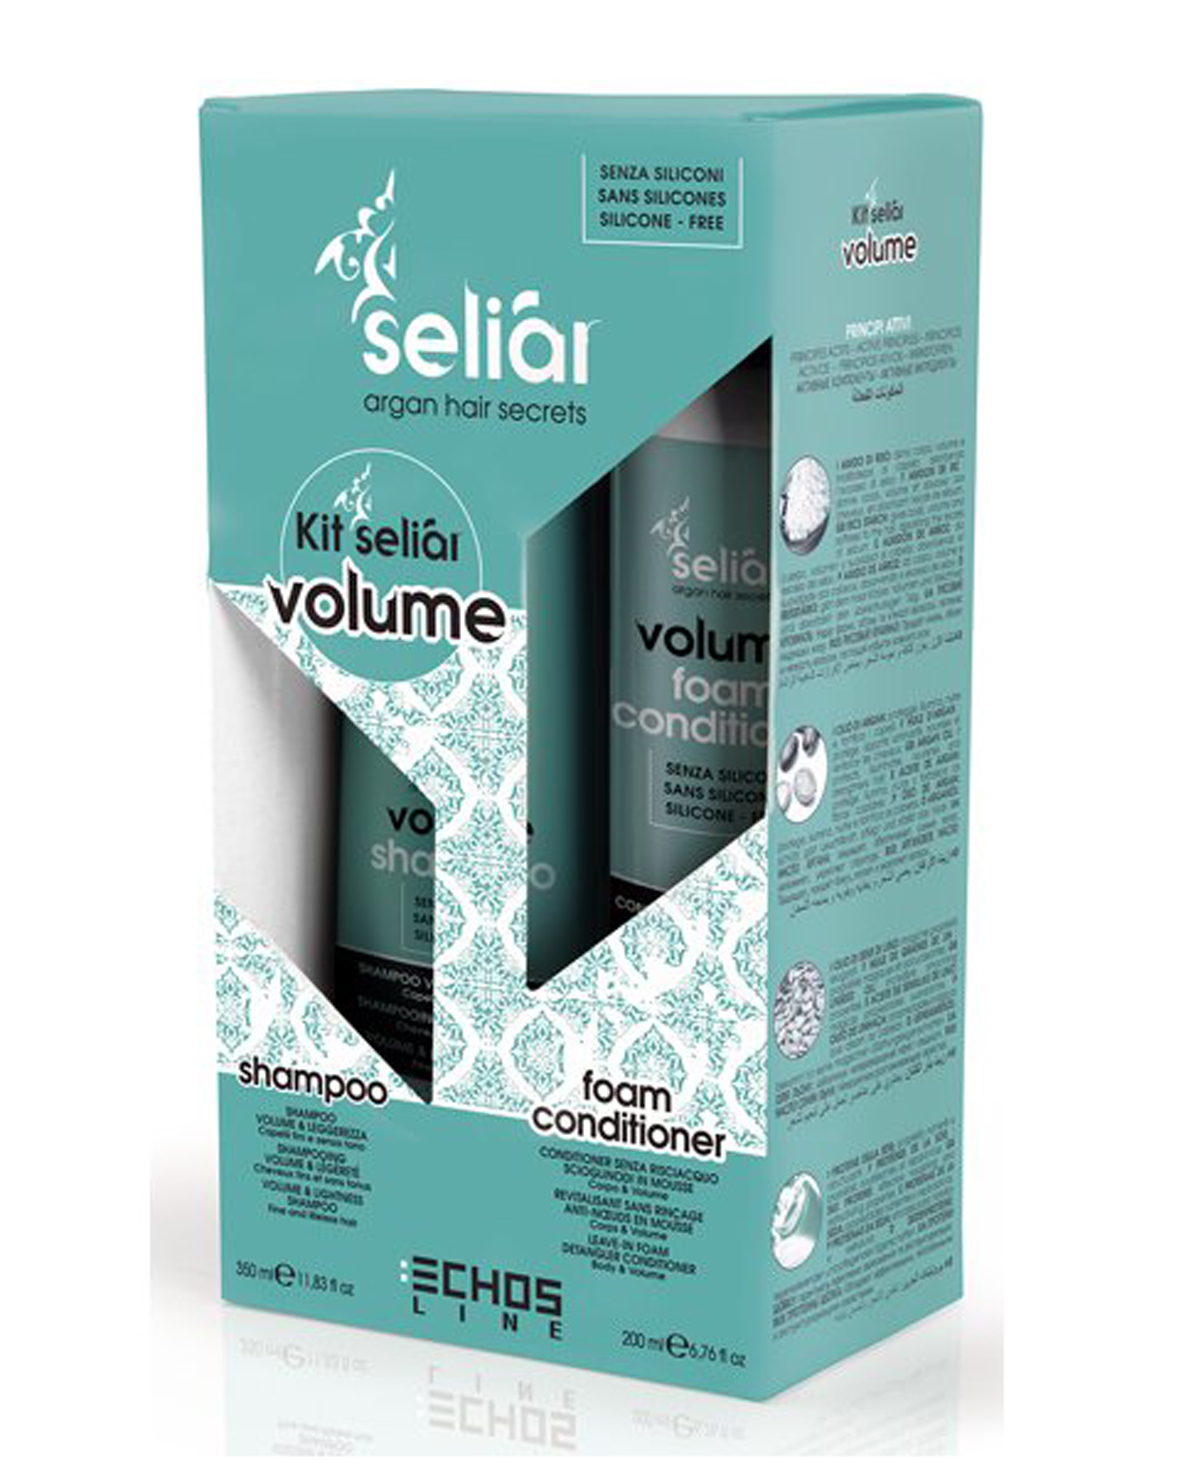 Echosline Seliár Volume sada - šampón, 350 ml + penový kondicionér, 200 ml